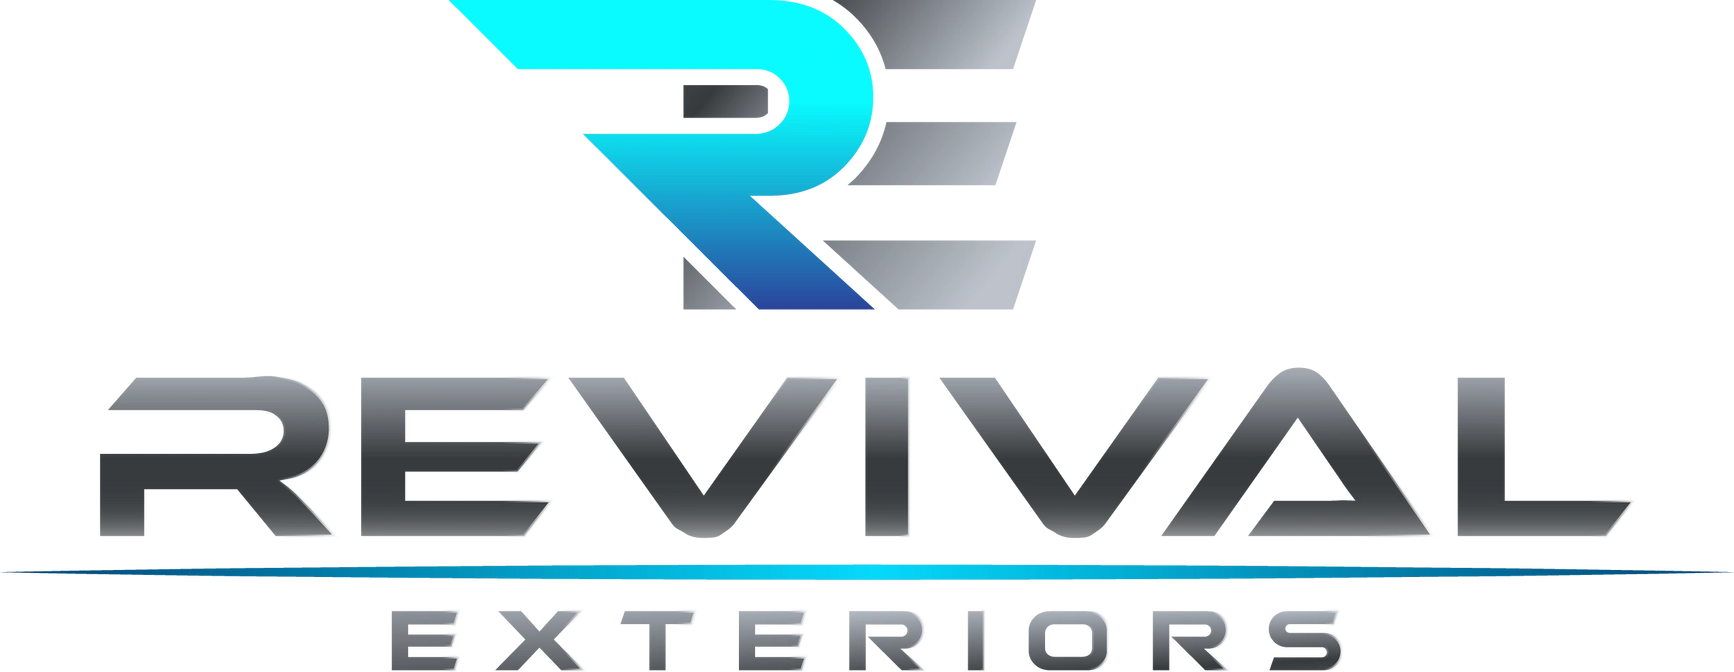 Revival Exteriors, LLC Logo